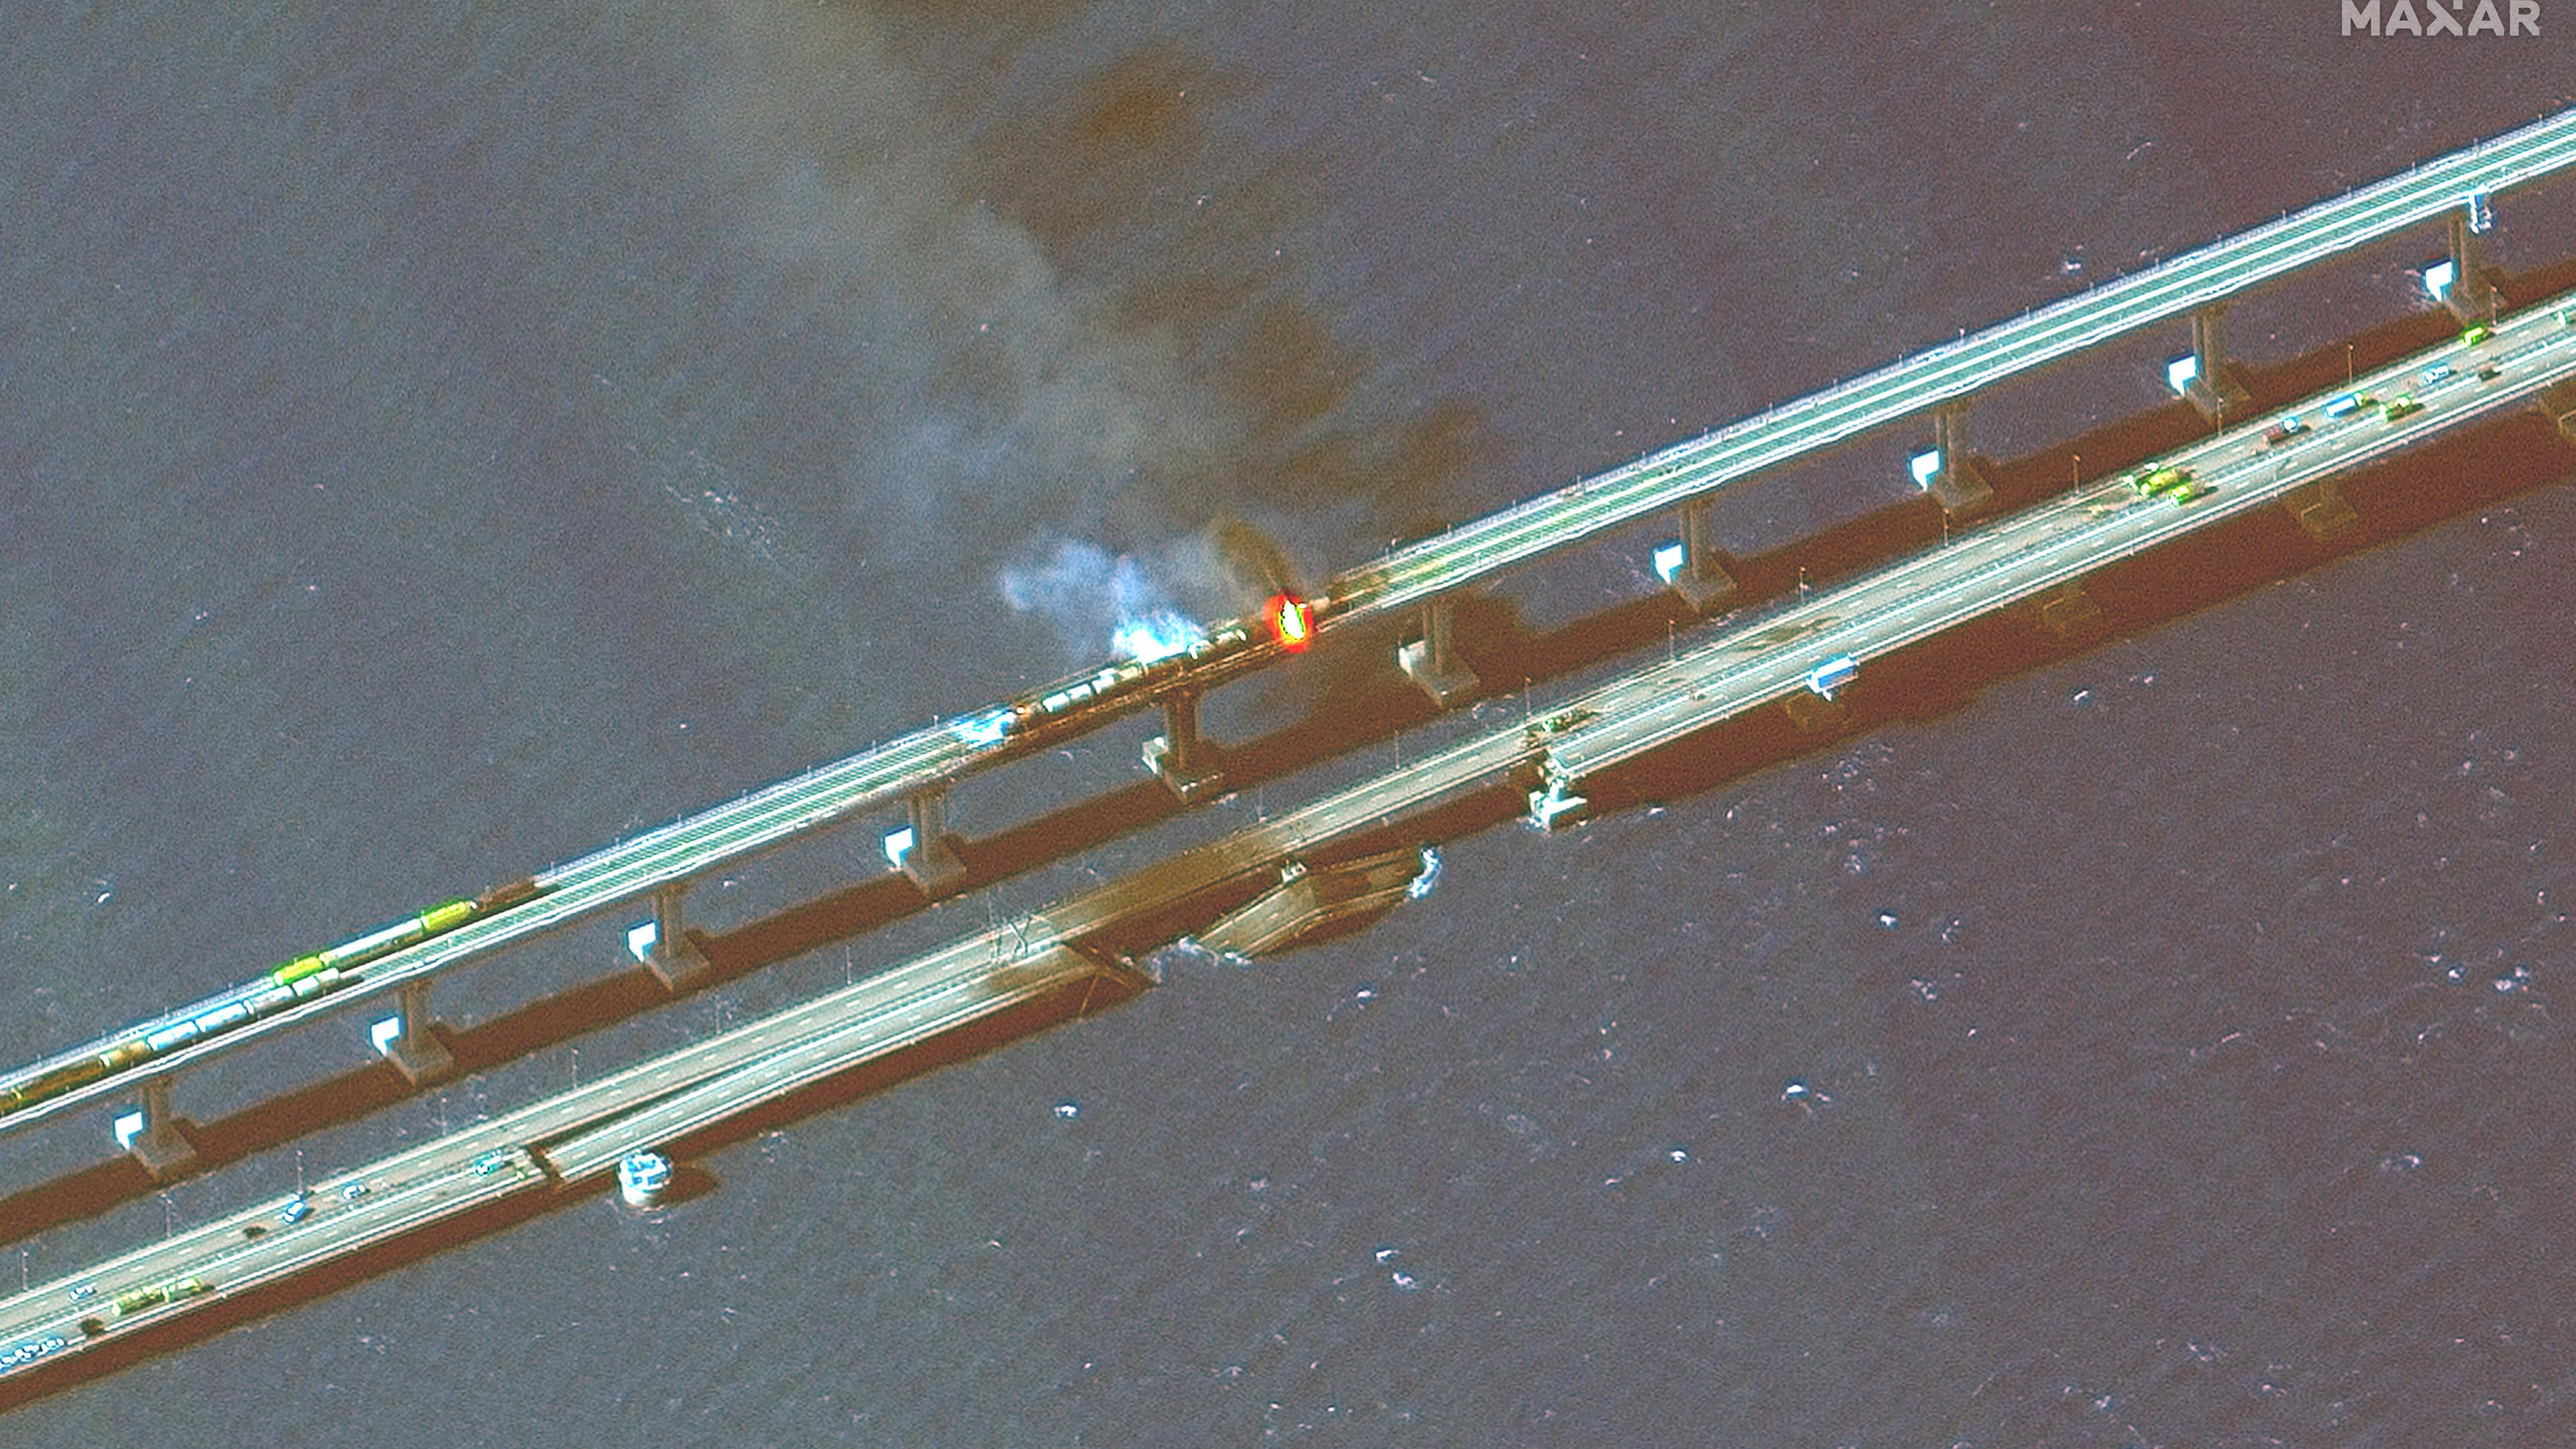 Dieses von Maxar Technologies bereitgestellte Satellitenbild zeigt brennende Eisenbahnwaggons und Schäden an der Krim-Brücke, die das russische Festland und die Halbinsel Krim über die Straße von Kertsch verbindet.